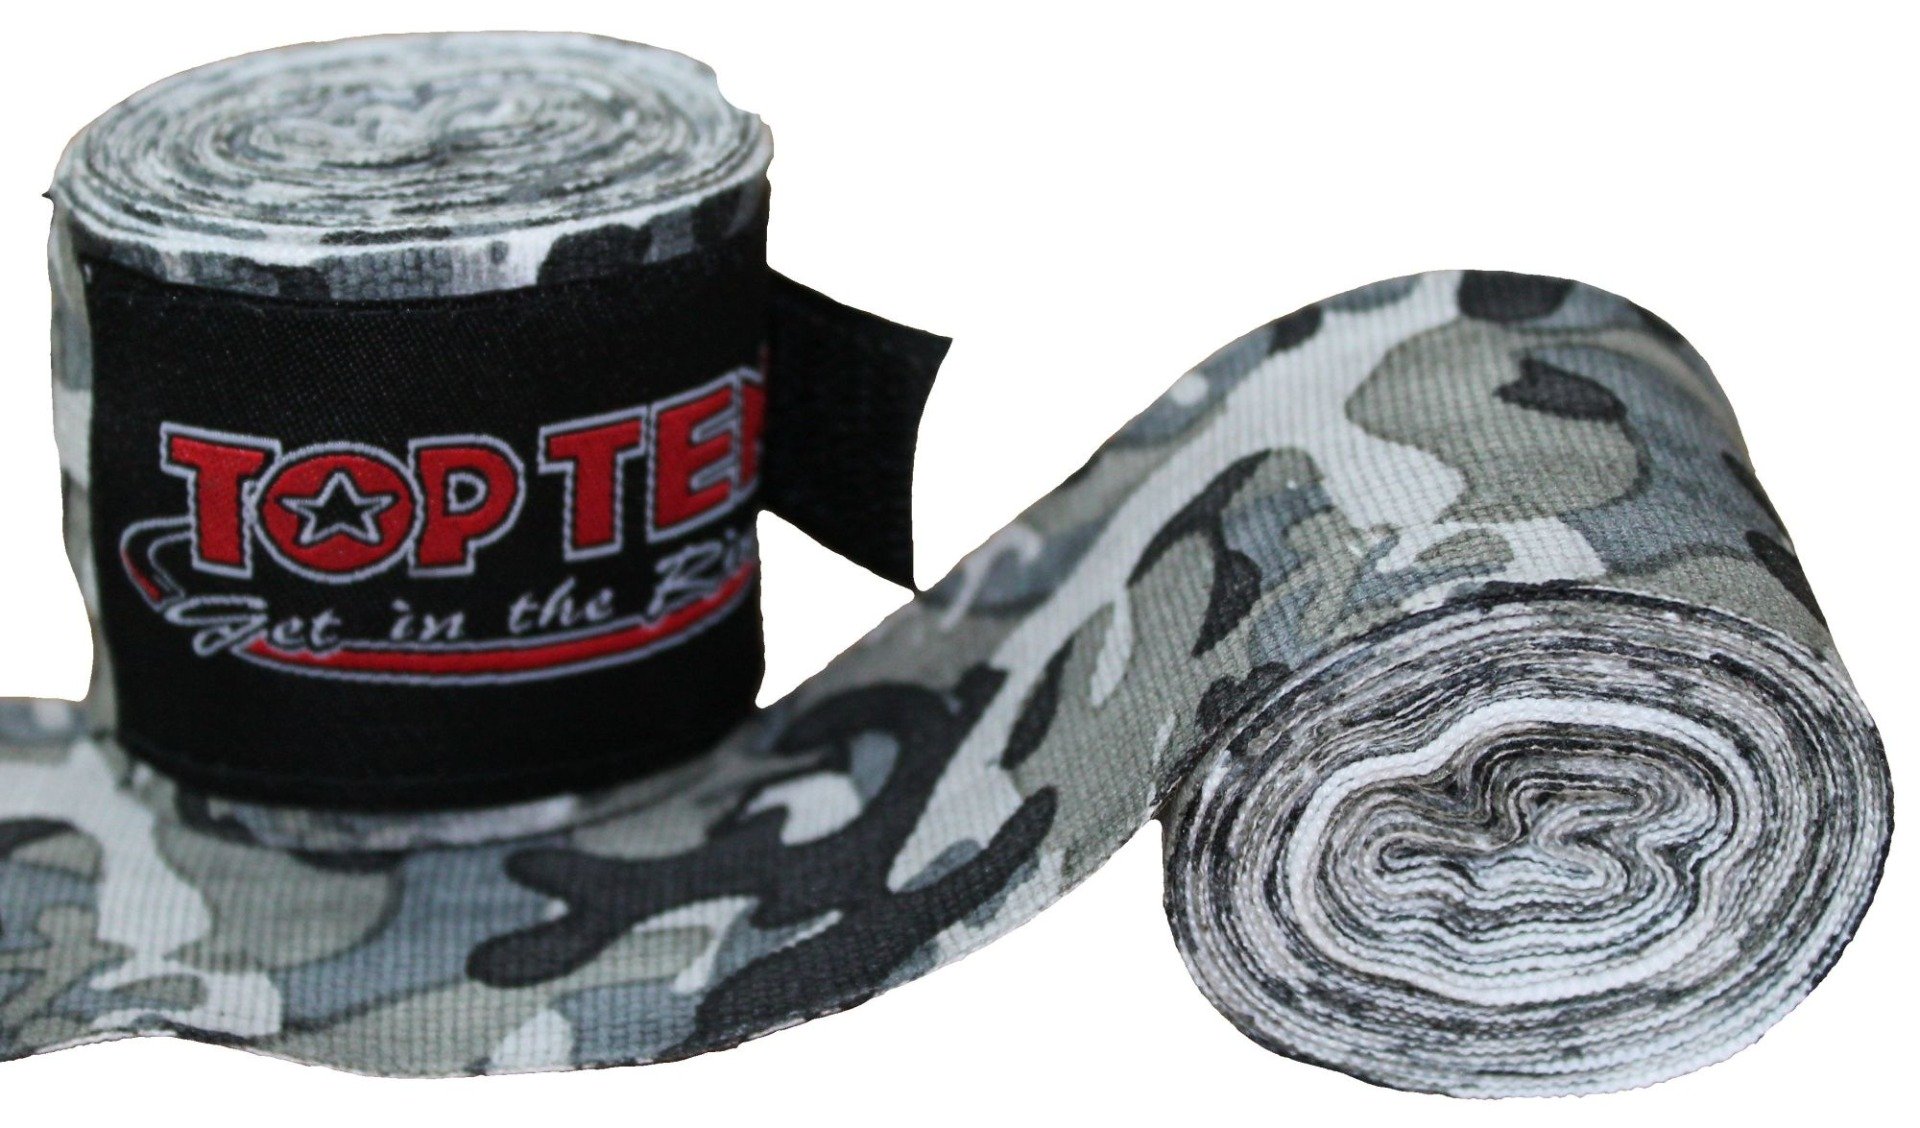 TOP TEN Boksbandage  boxing bandage elastic “Camouflage” Blauw - Wit